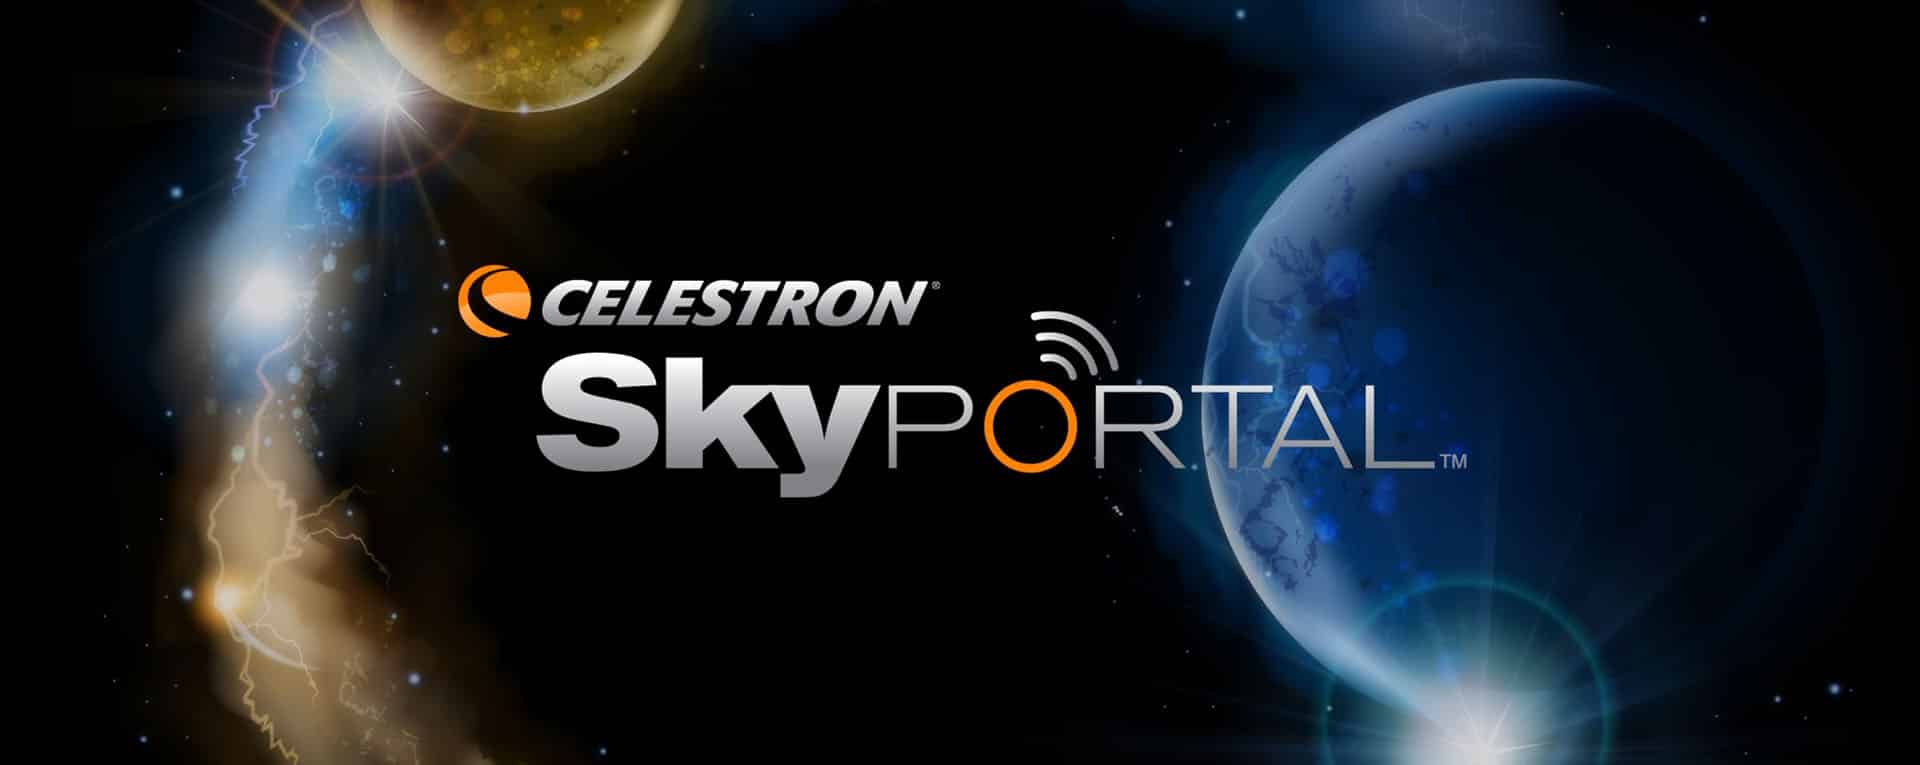 celestron sky portal banner home